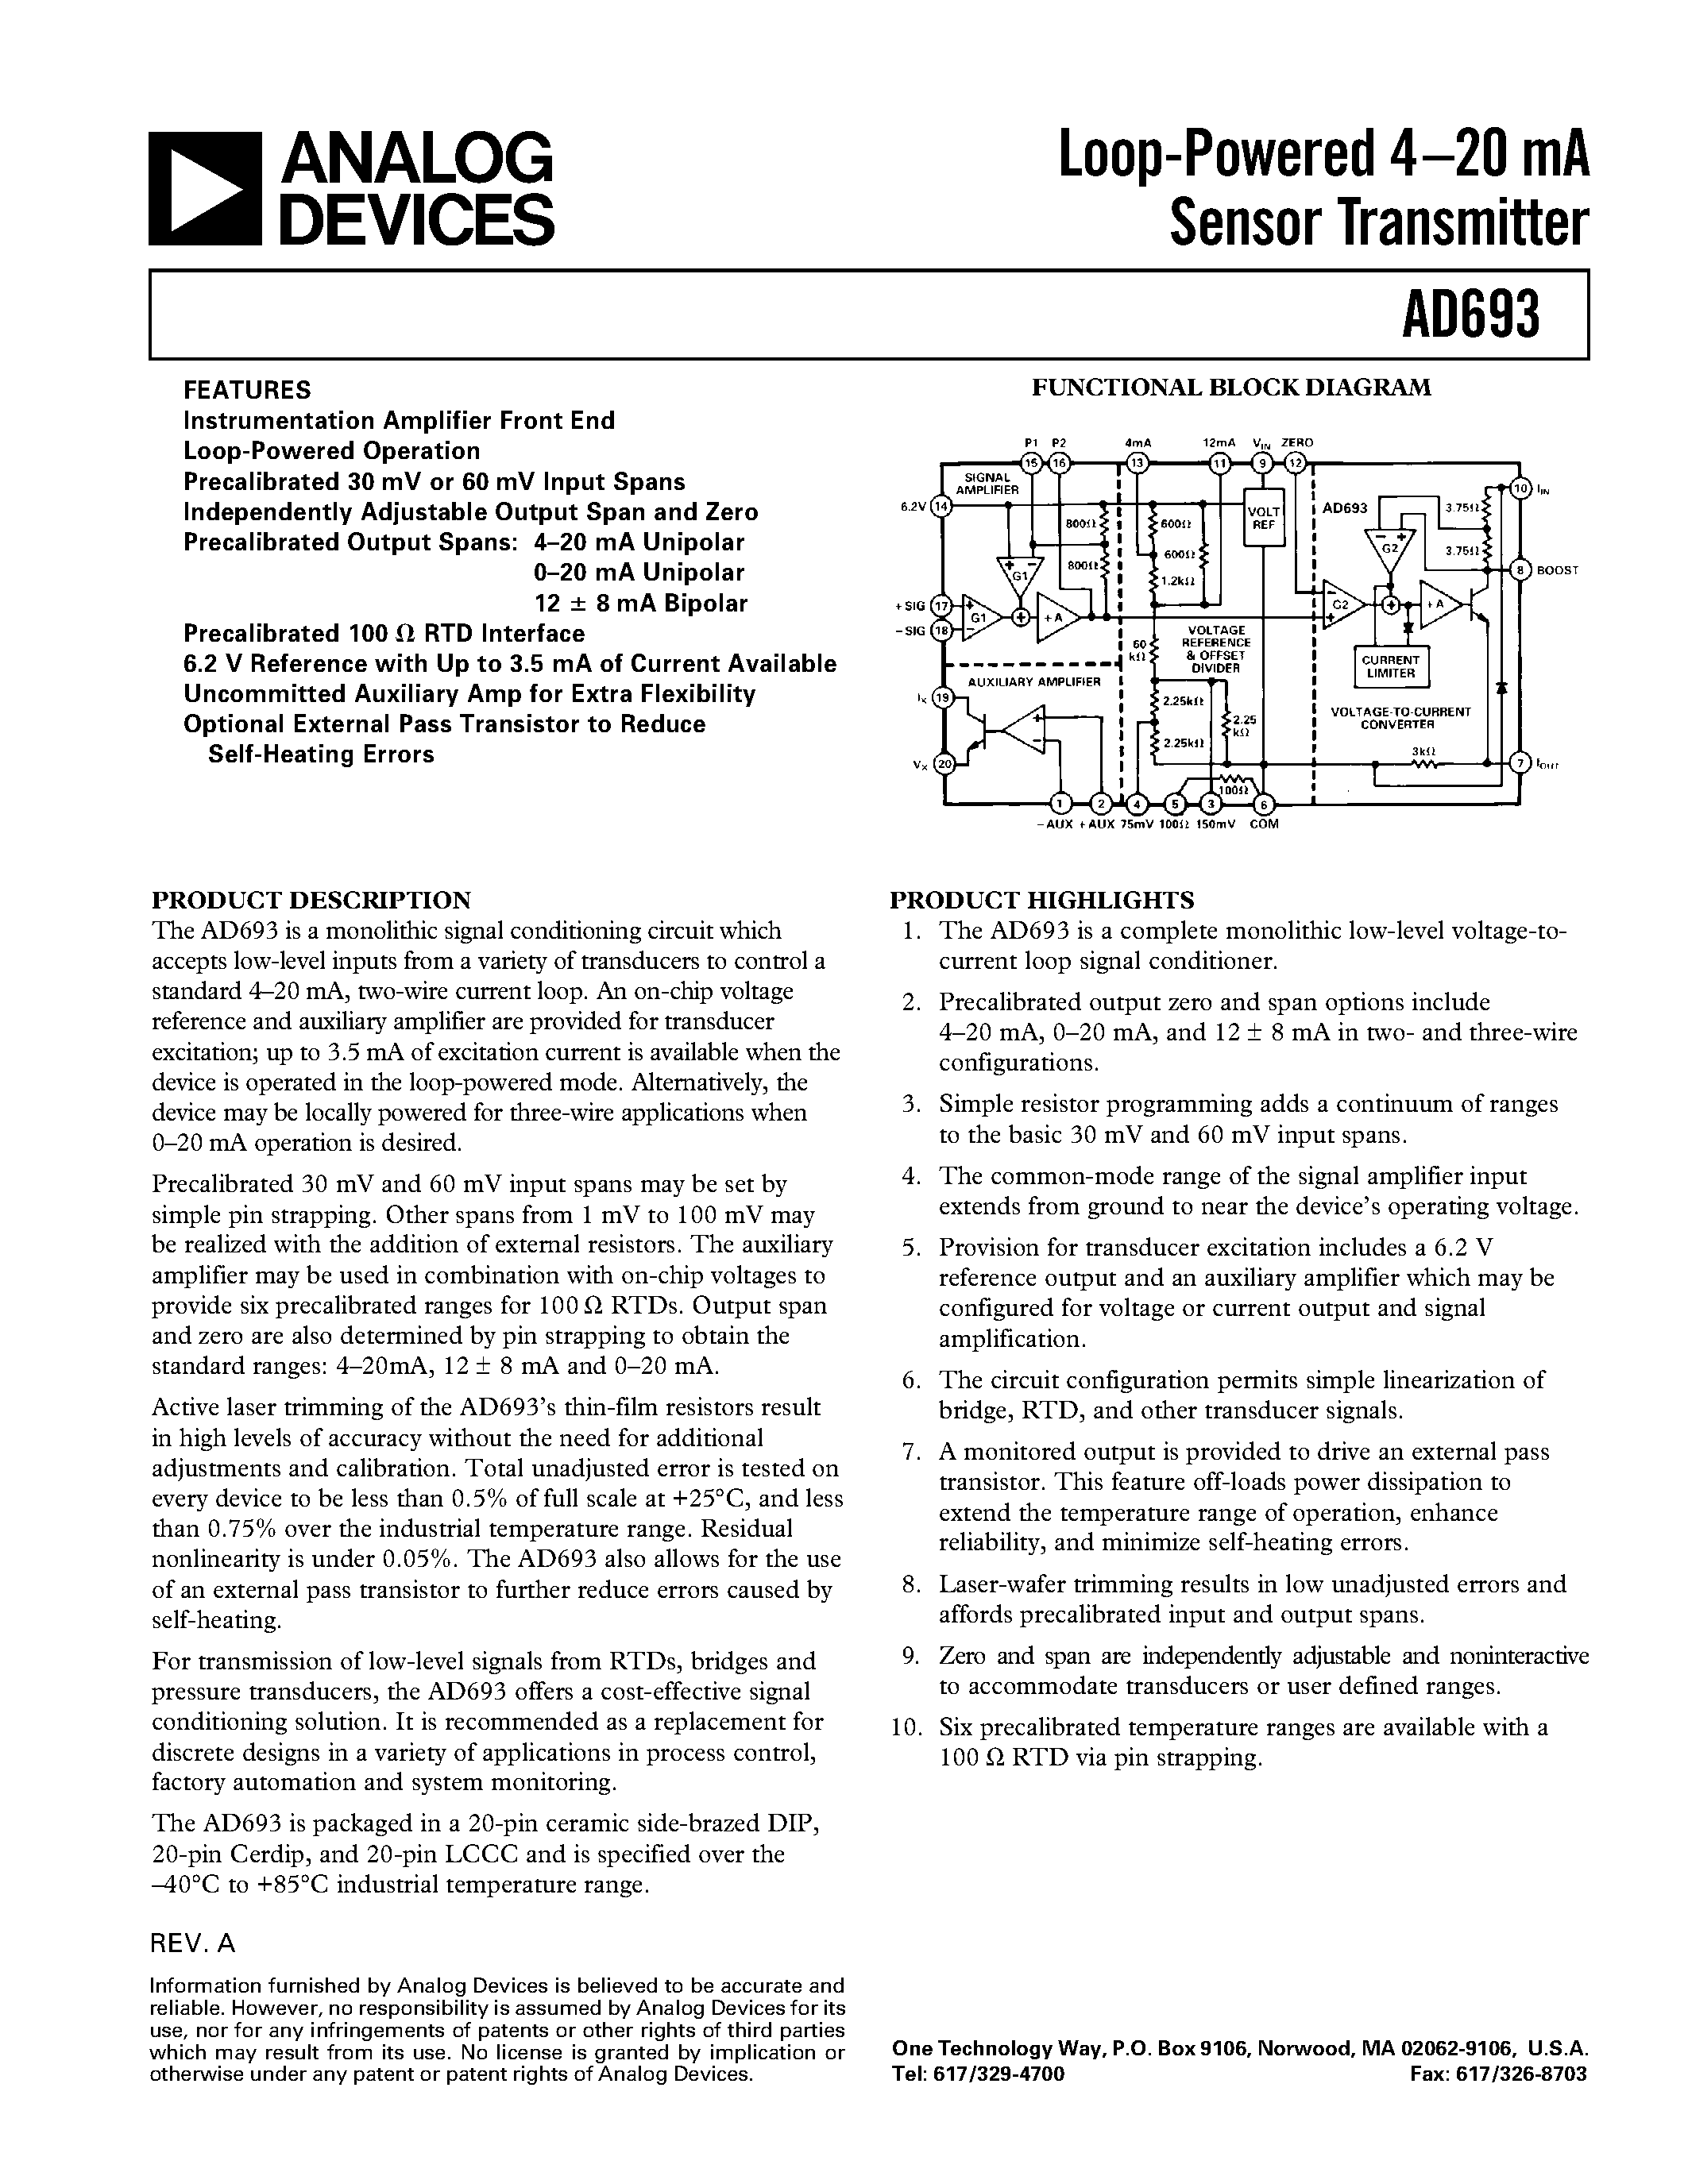 Даташит AD693AE - Loop-Powered 4.20 mA Sensor Transmitter страница 1